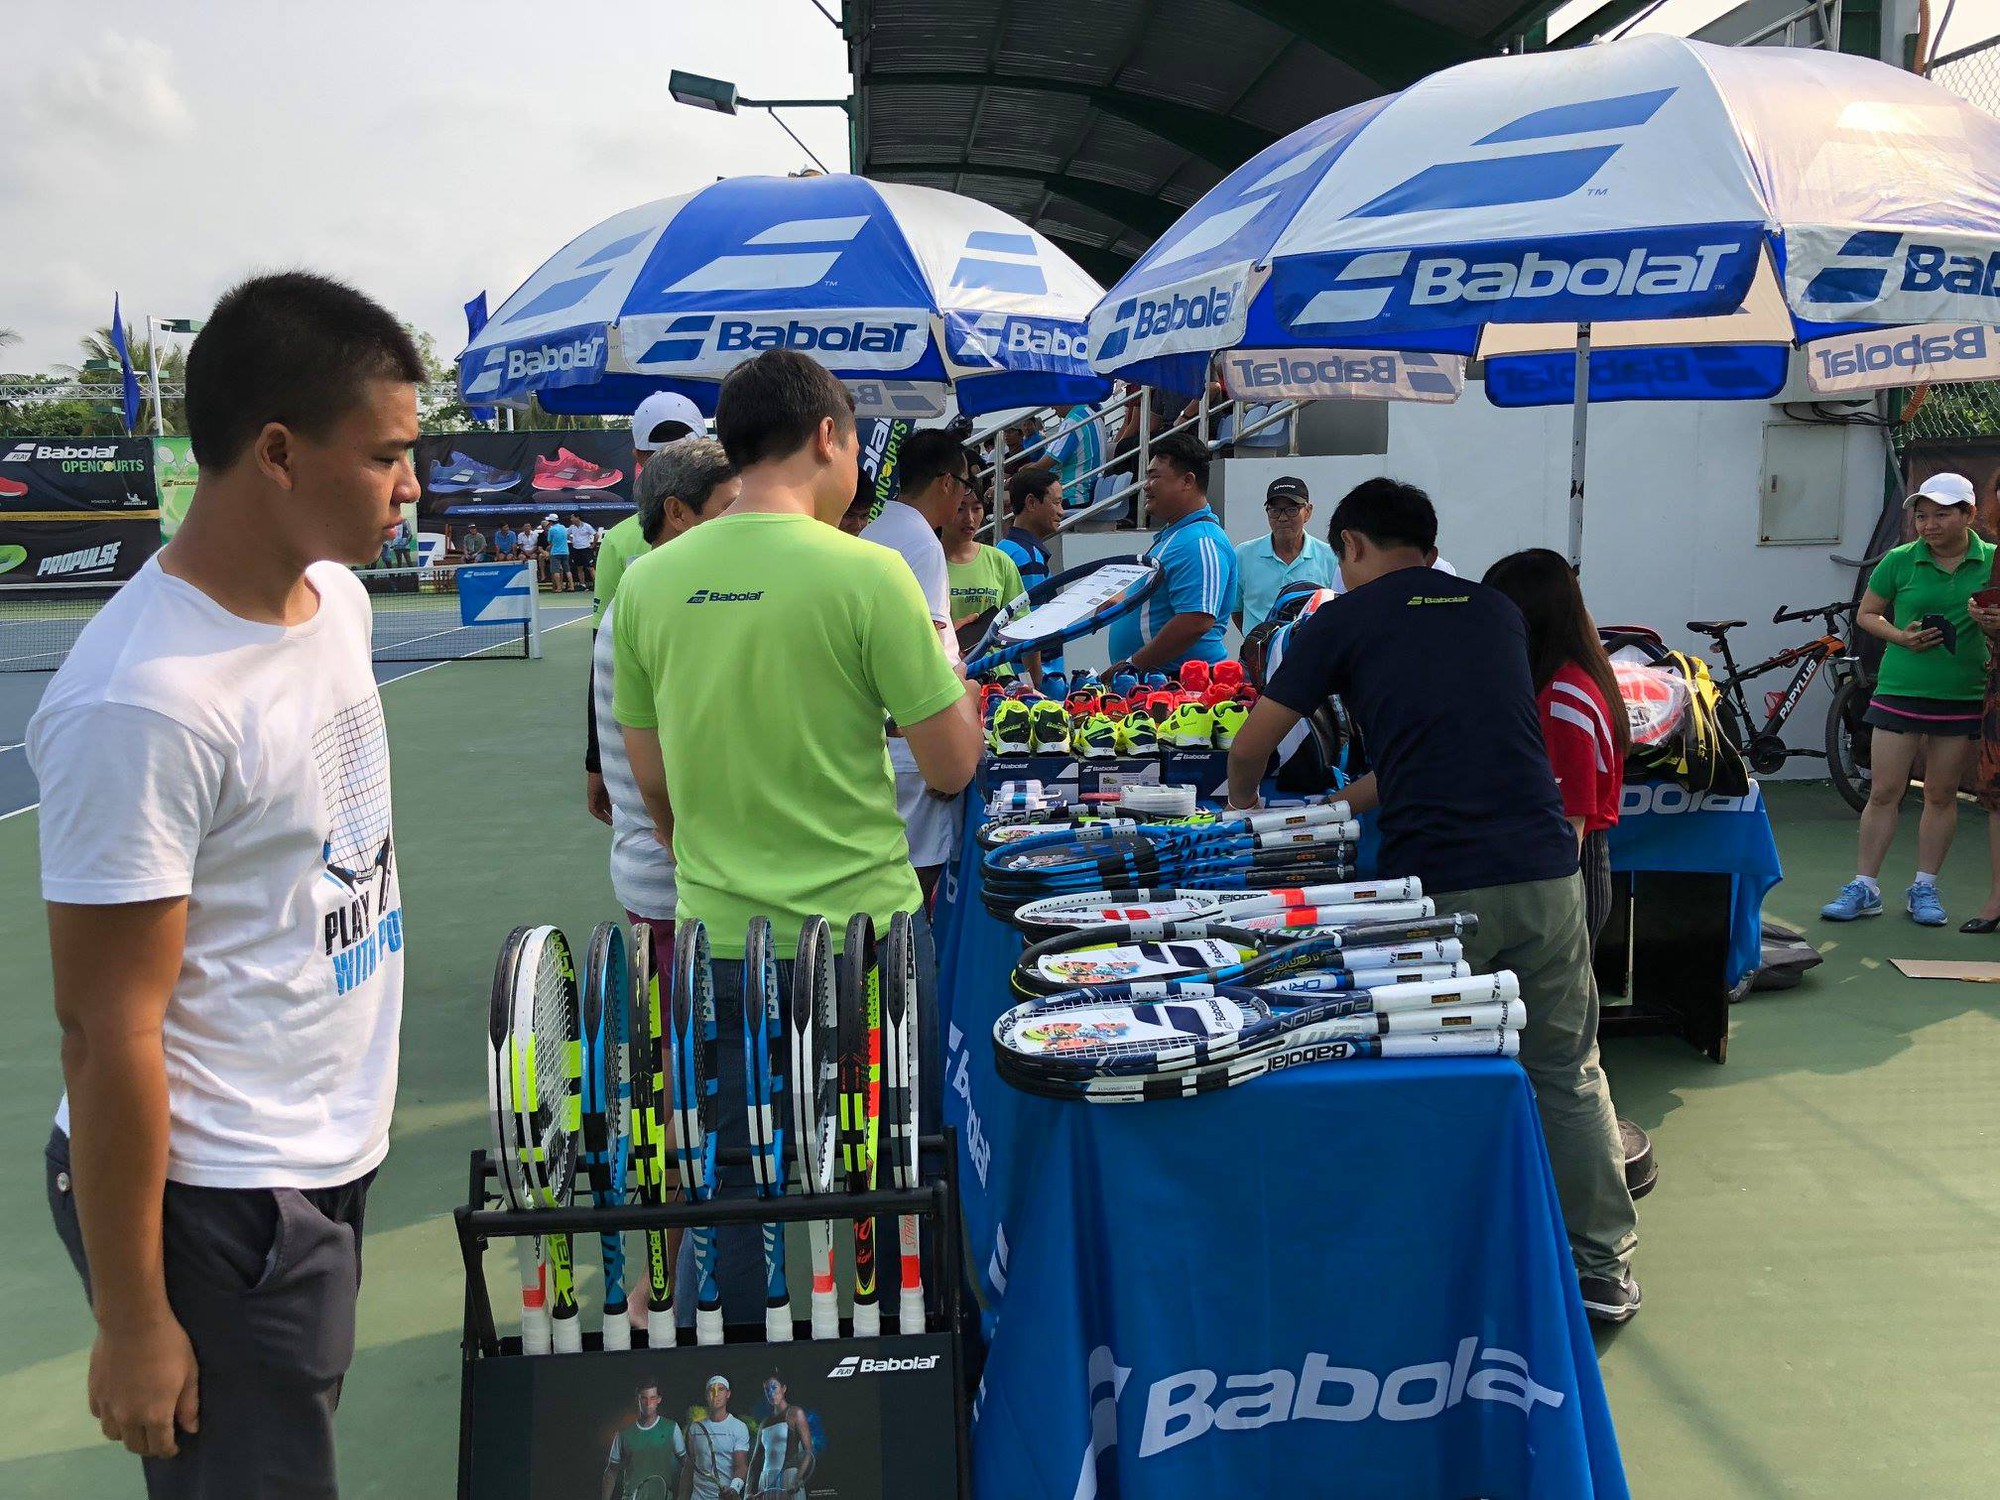 Giải Babolat Open Courts Hà Nội 2018: Ngày hội làng banh nỉ với trai đẹp, dị nhân và công nghệ - Ảnh 2.